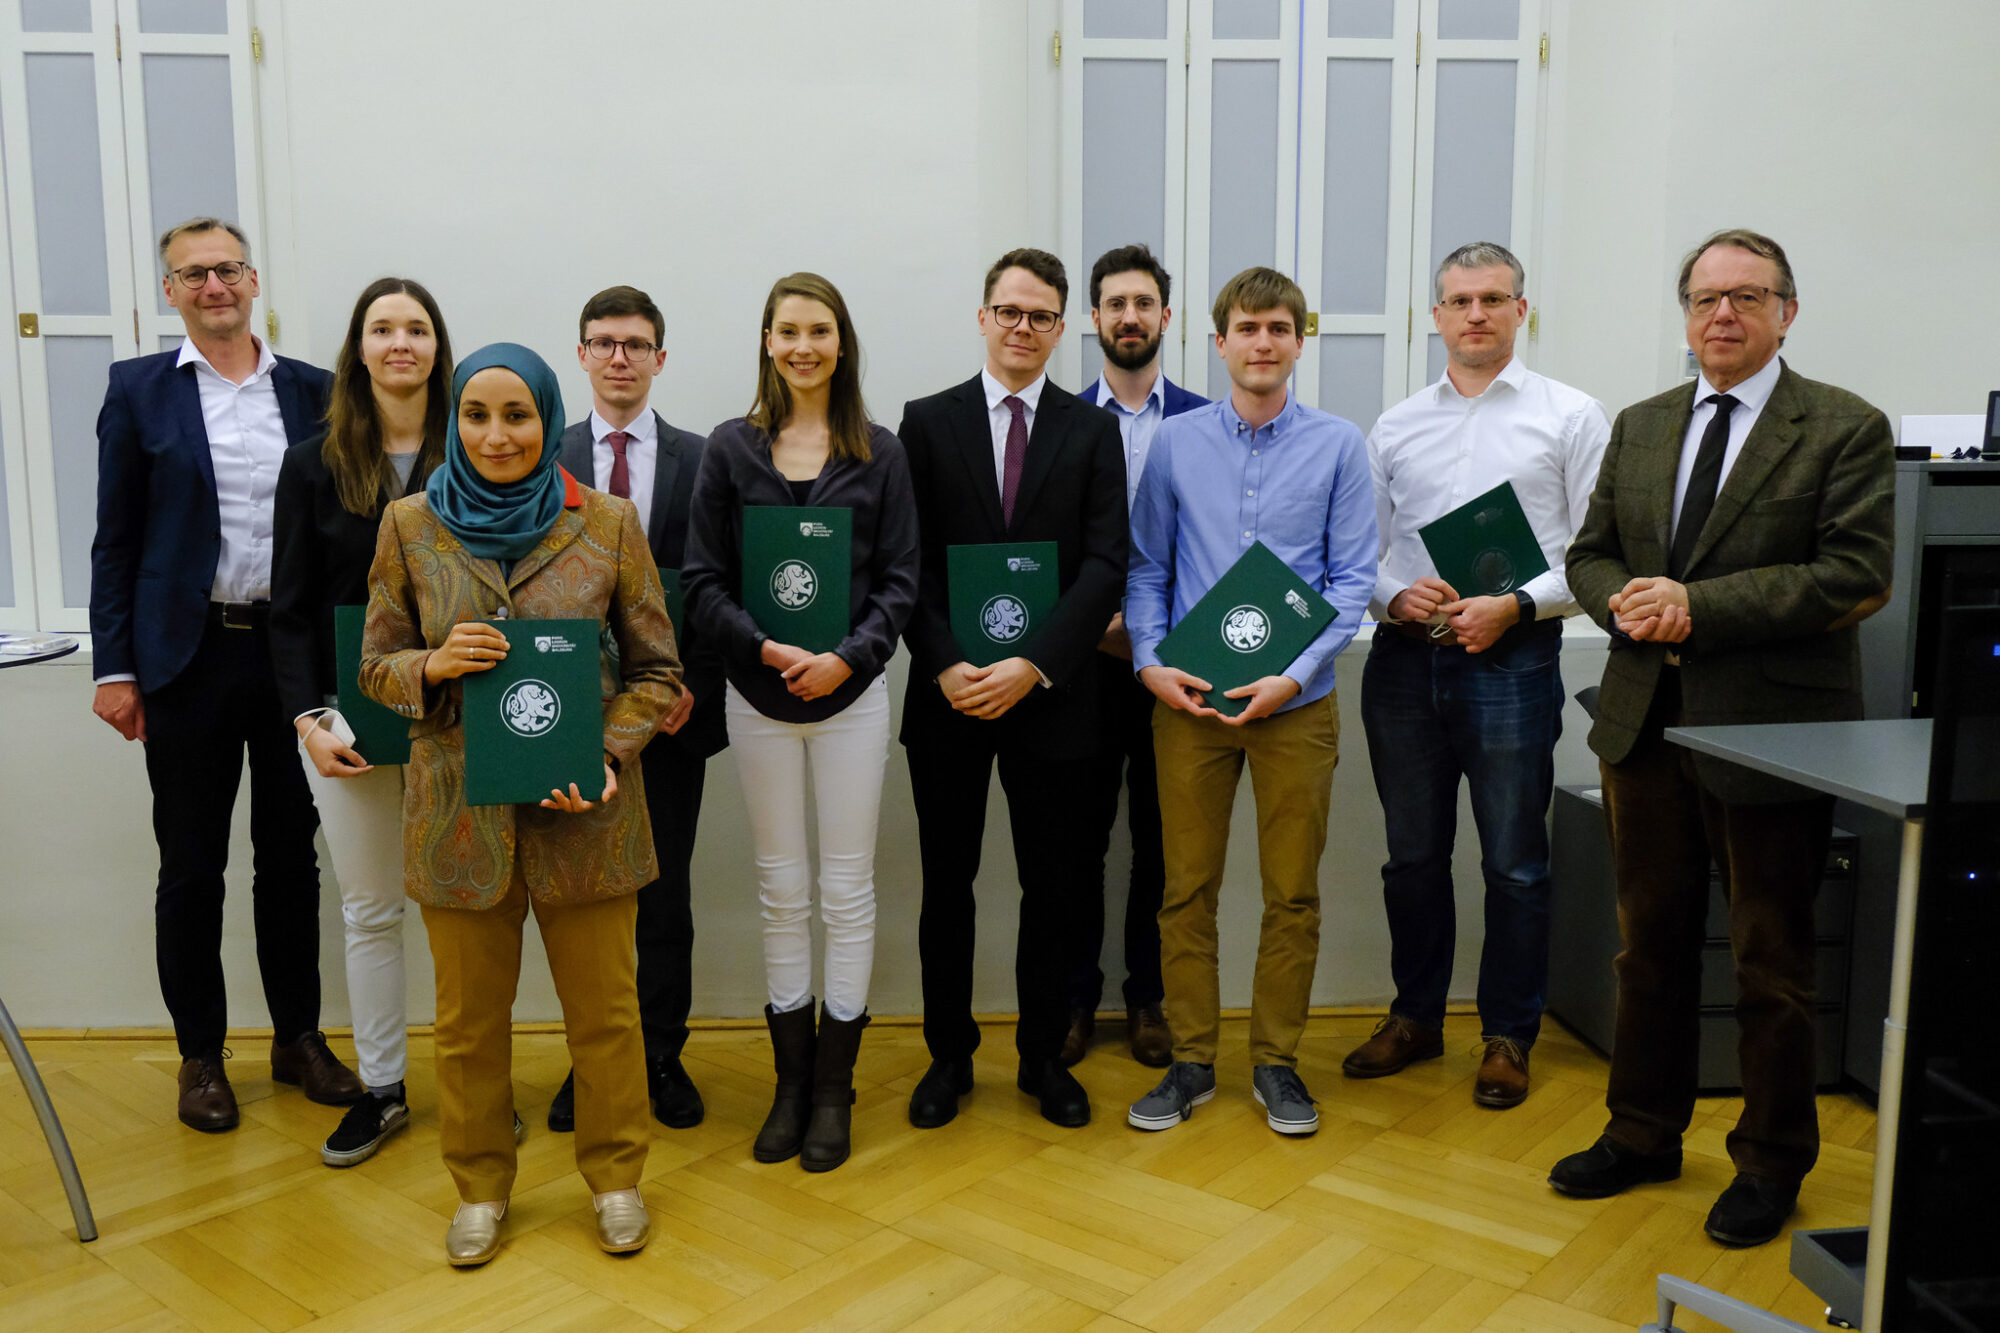 Preistäger und Preistägerinnen des Young Investigators Award 2021